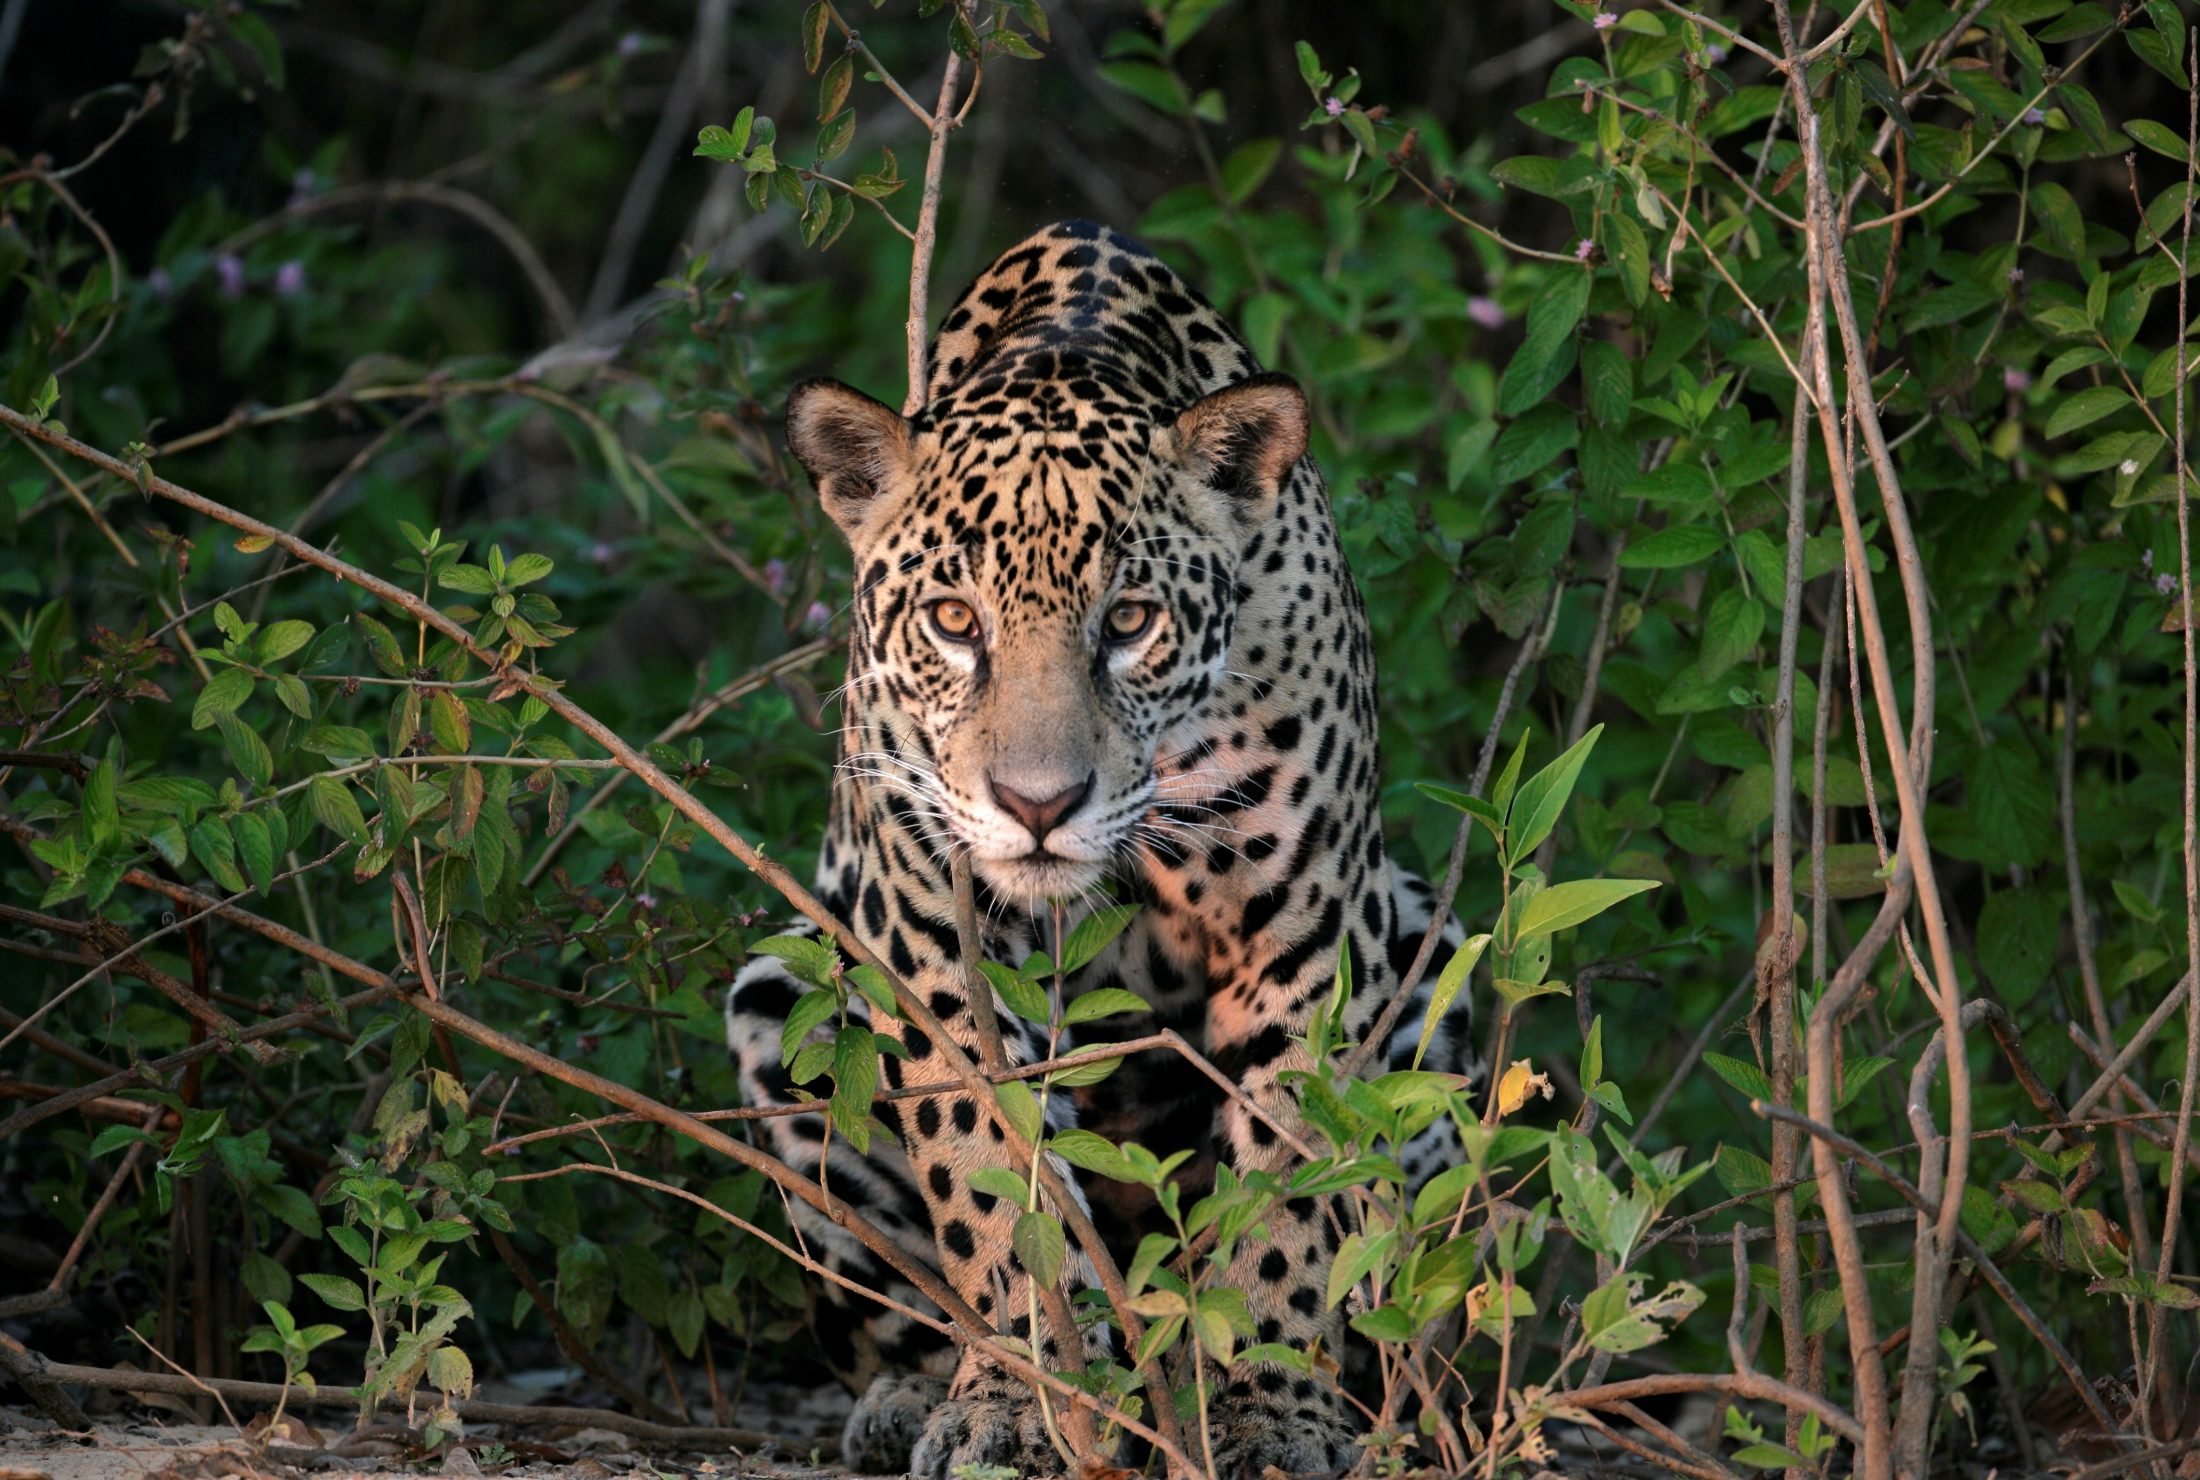 Jaguar, facts and photos